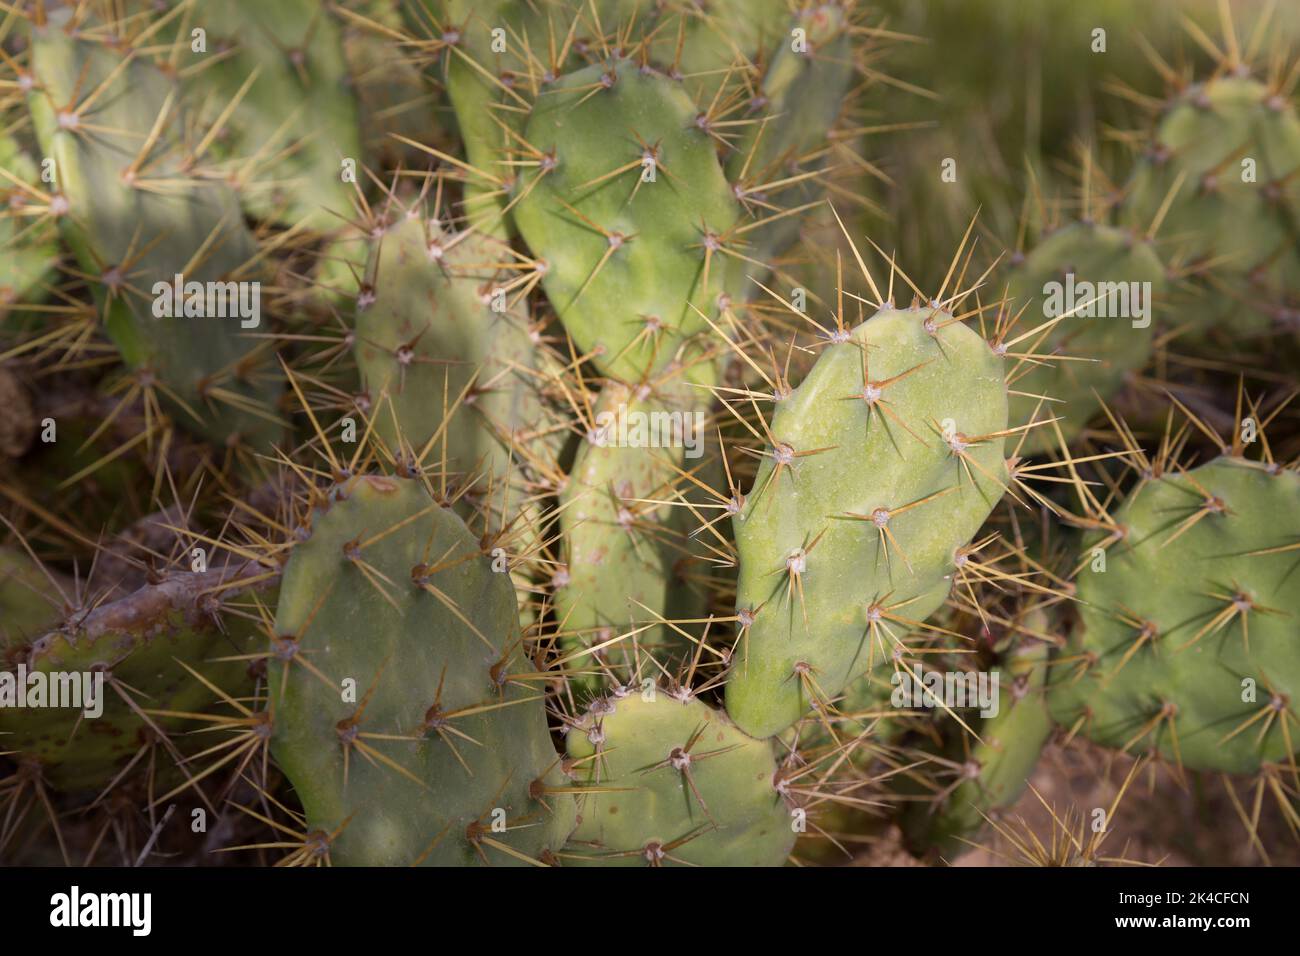 A closeup shot of cactuses Stock Photo